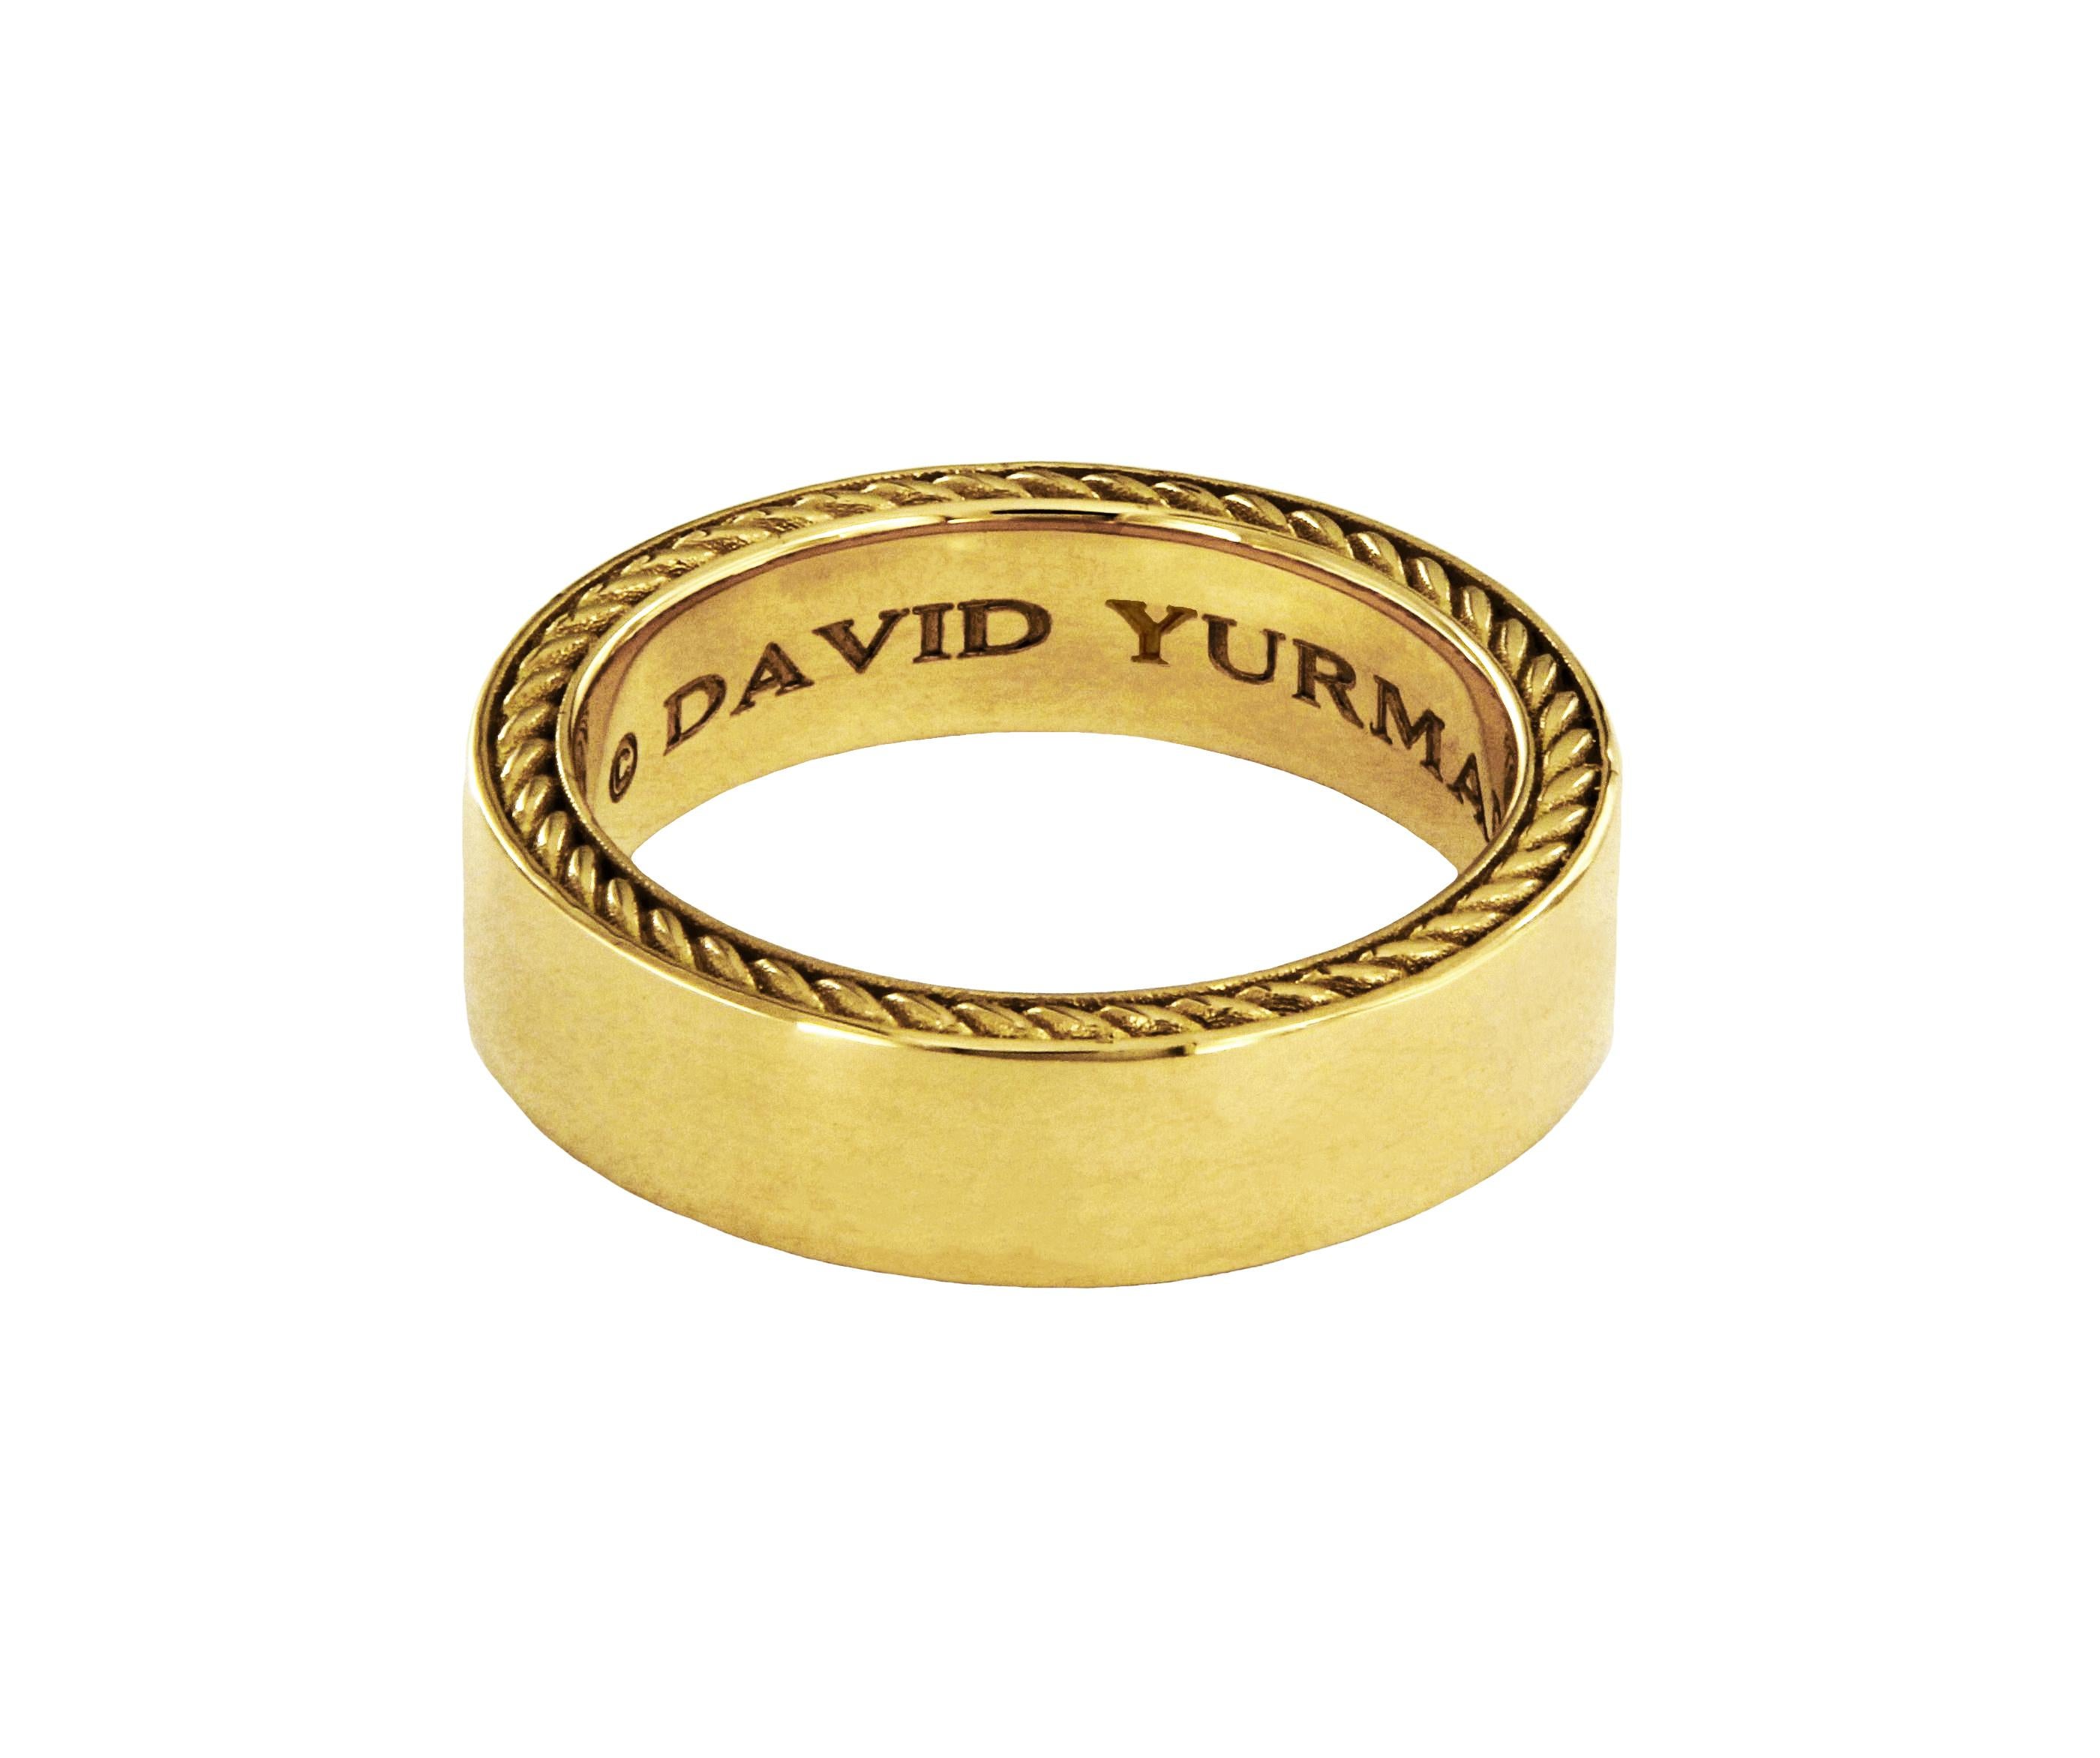 Collezione Streamline. Anello a fascia da uomo.

Oro giallo 18 carati
Misura dell'anello - 10
Anello largo - 6 mm
Peso dell'anello: 16gr
*La scatola di David Yurman è inclusa.

